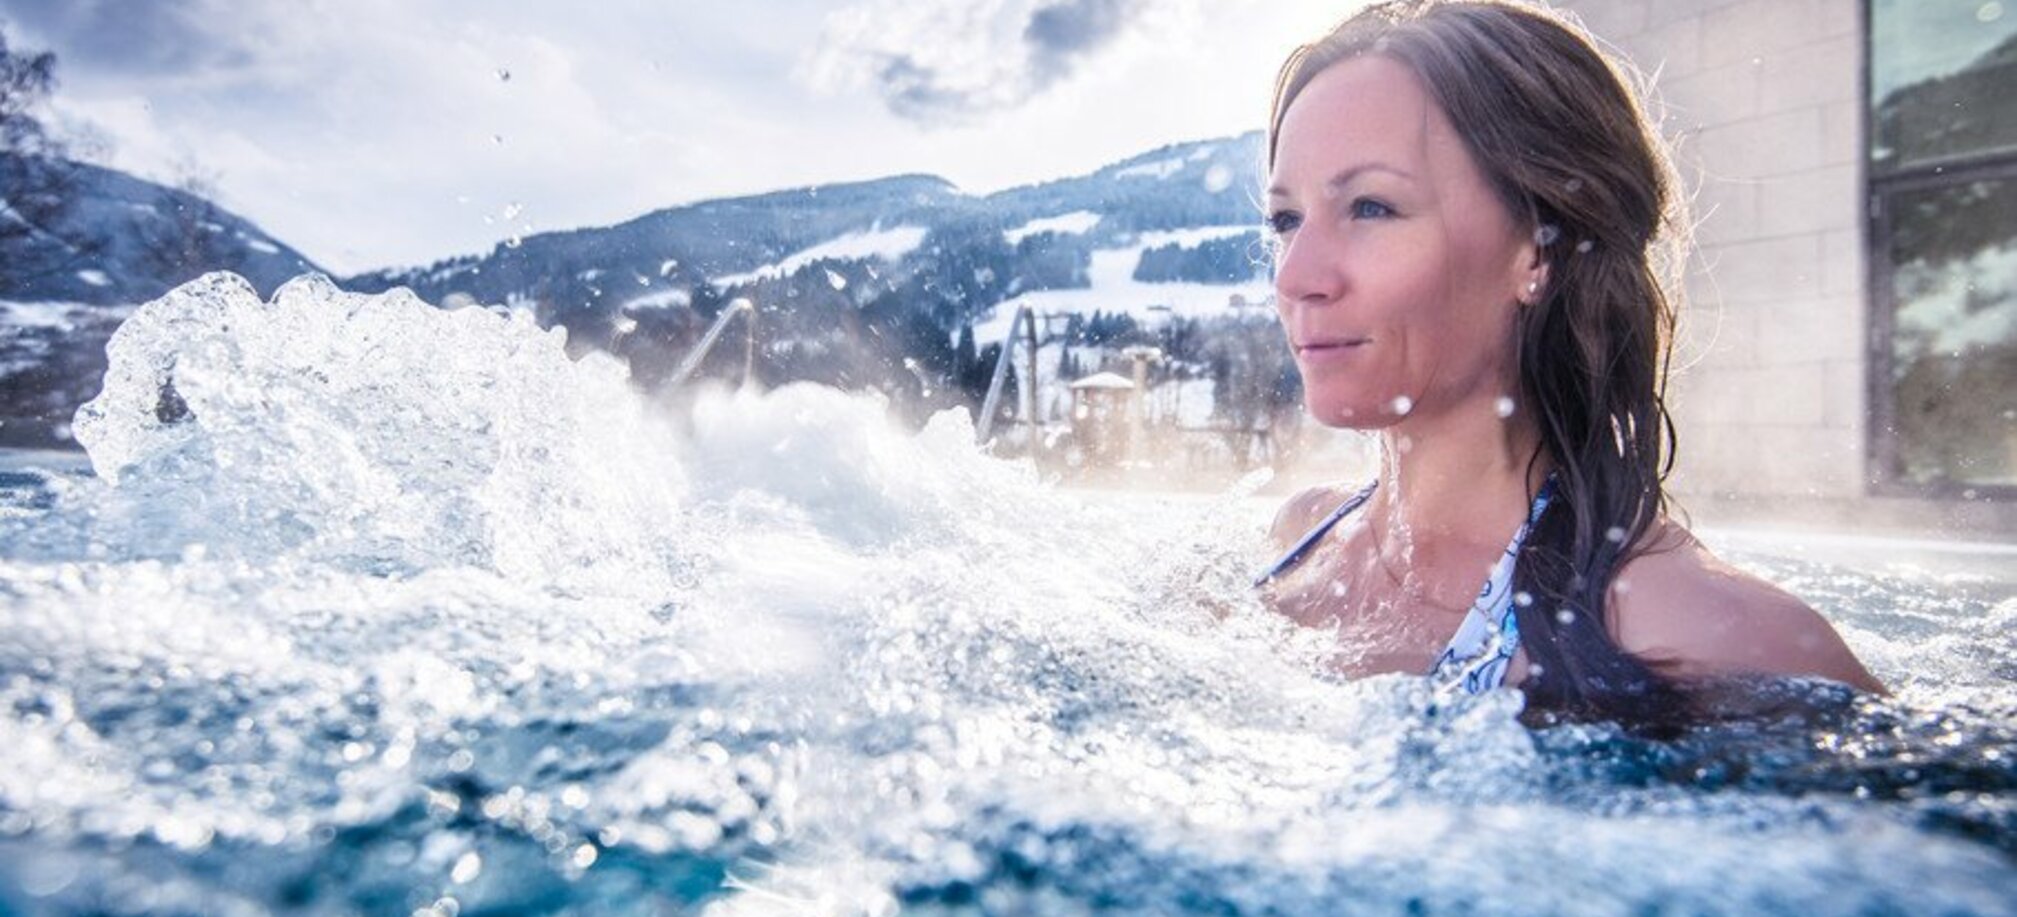 Eine Frau ist in einem Schwimmbecken und vor ihr sprudelt das Wasser und im Hintergrund sind Berge mit Skipisten zu sehen